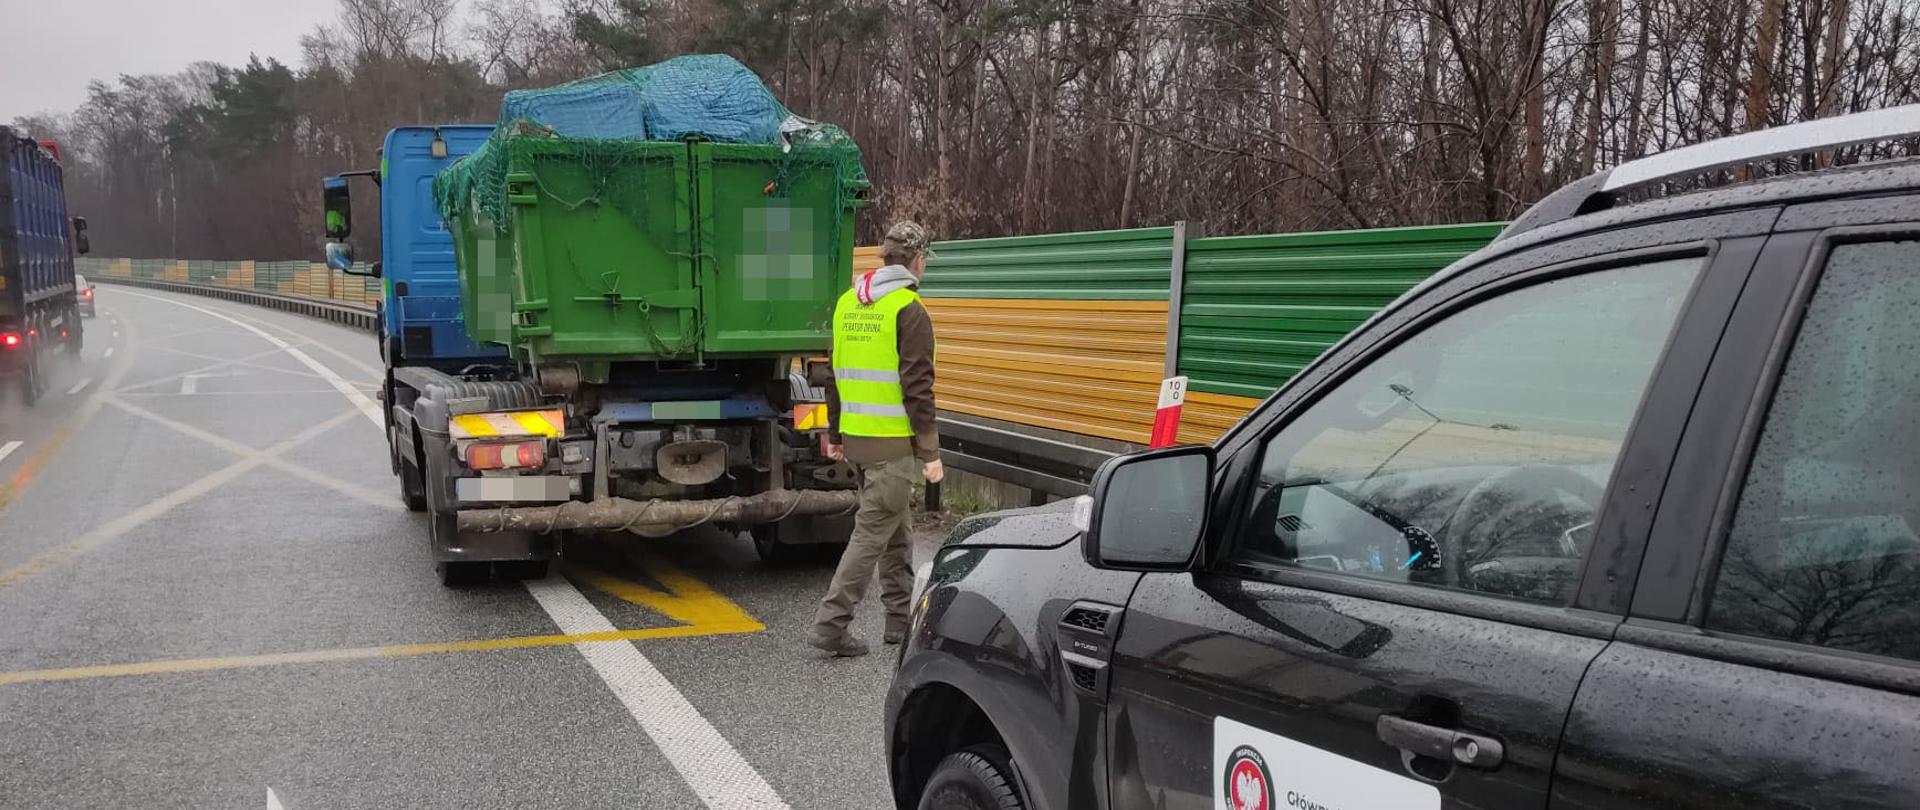 Inspektor z GIOŚ zatrzymuje ciężarówkę z odpadami do kontroli